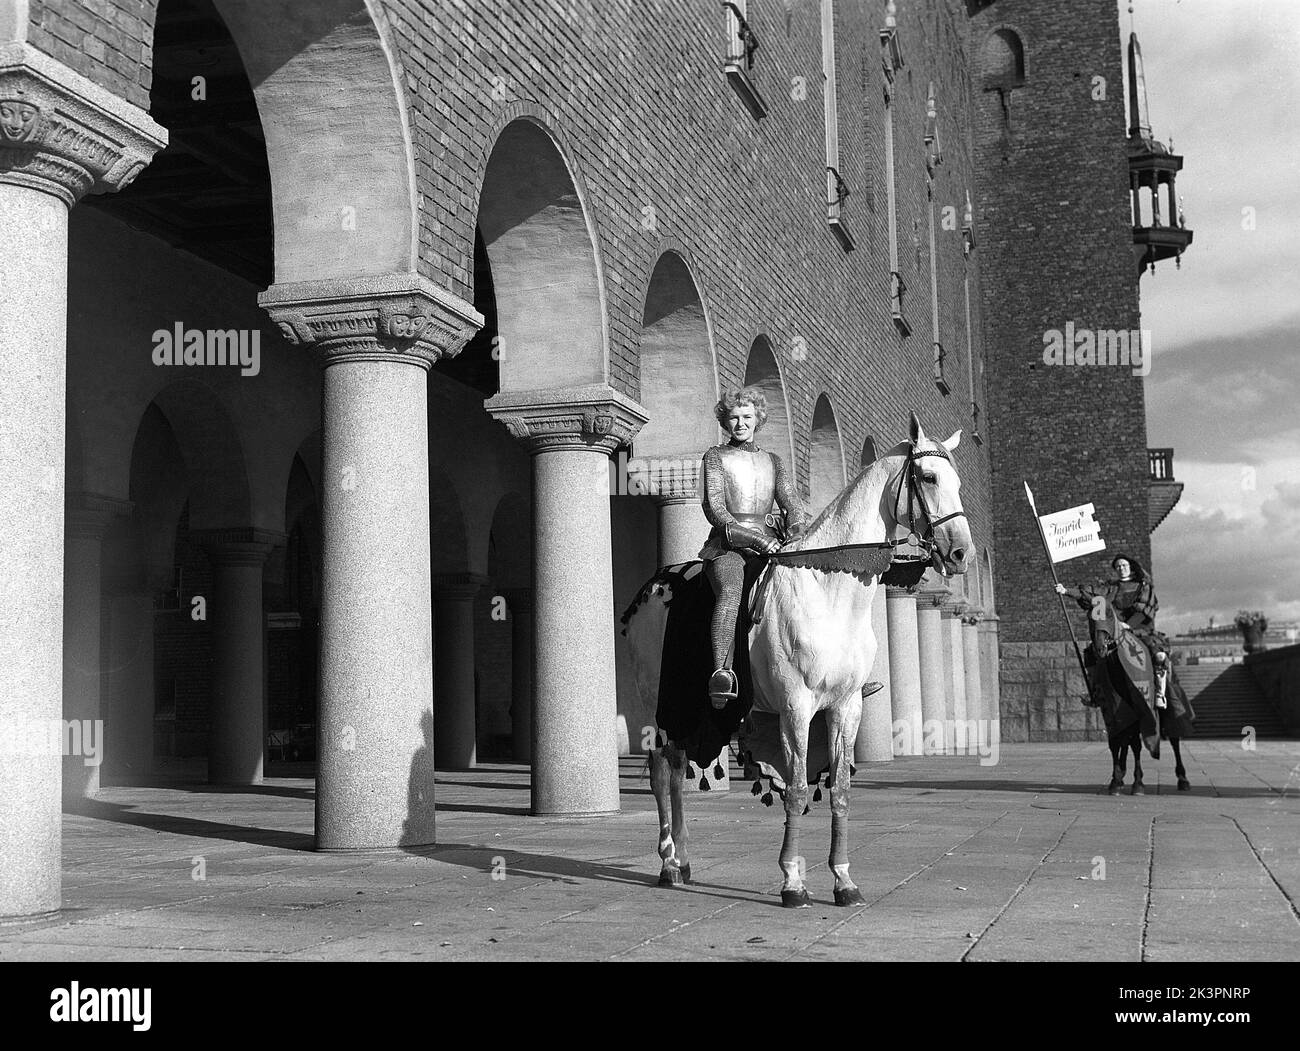 Negli anni '1940s. Il film americano Jeanne d'Arc è stato promosso per la sua prima proiezione e Kerstin Bergo è stato scelto per agire come Ingrid Bergman nel pr-stunt. Sembrava un po' Ingrid Bergman e poteva cavalcare. Sullo sfondo del municipio di Stoccolma. Stoccolma Svezia 1949. Kristoffersson rif AO18-1 Foto Stock